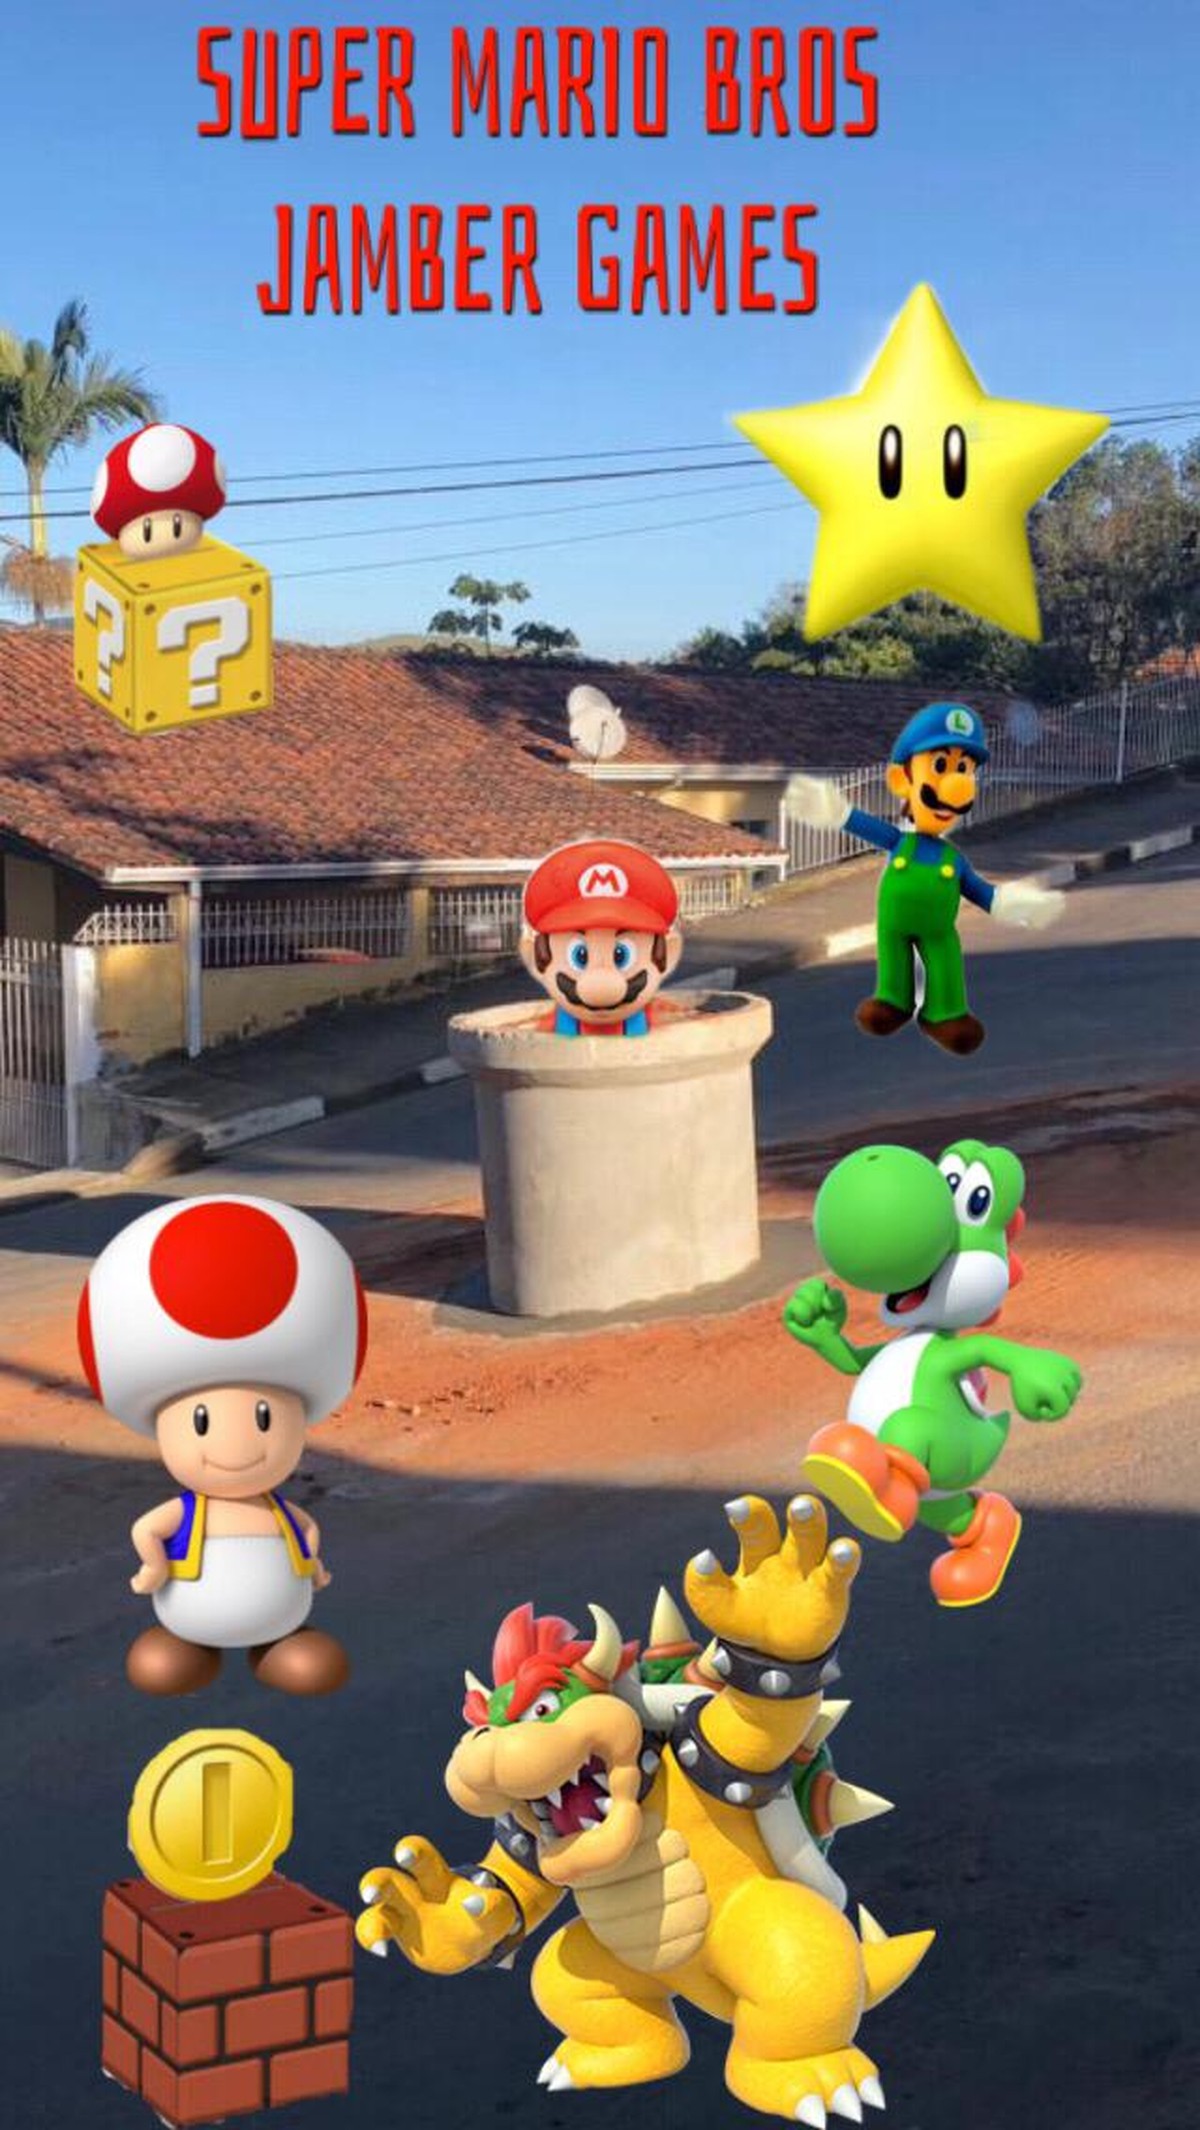 Você joga Super Mario Bros? Que tal participar de um desafio em Hortolândia!